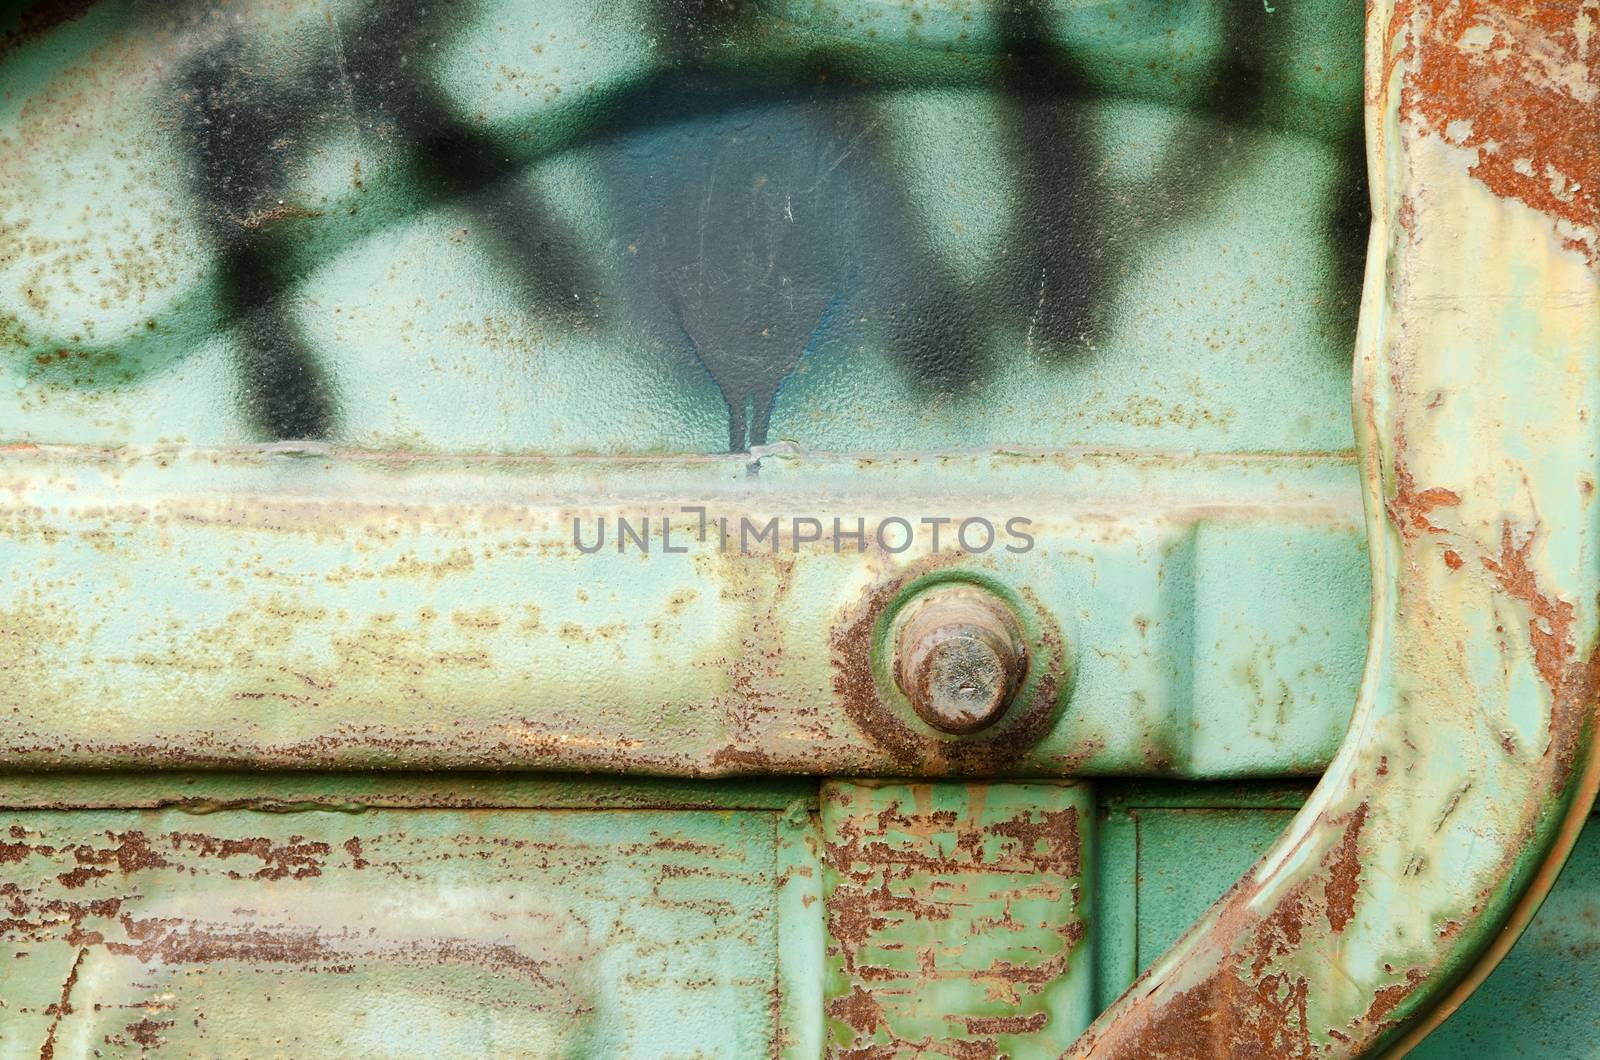 Detail of old rusty blue metal dust bin.